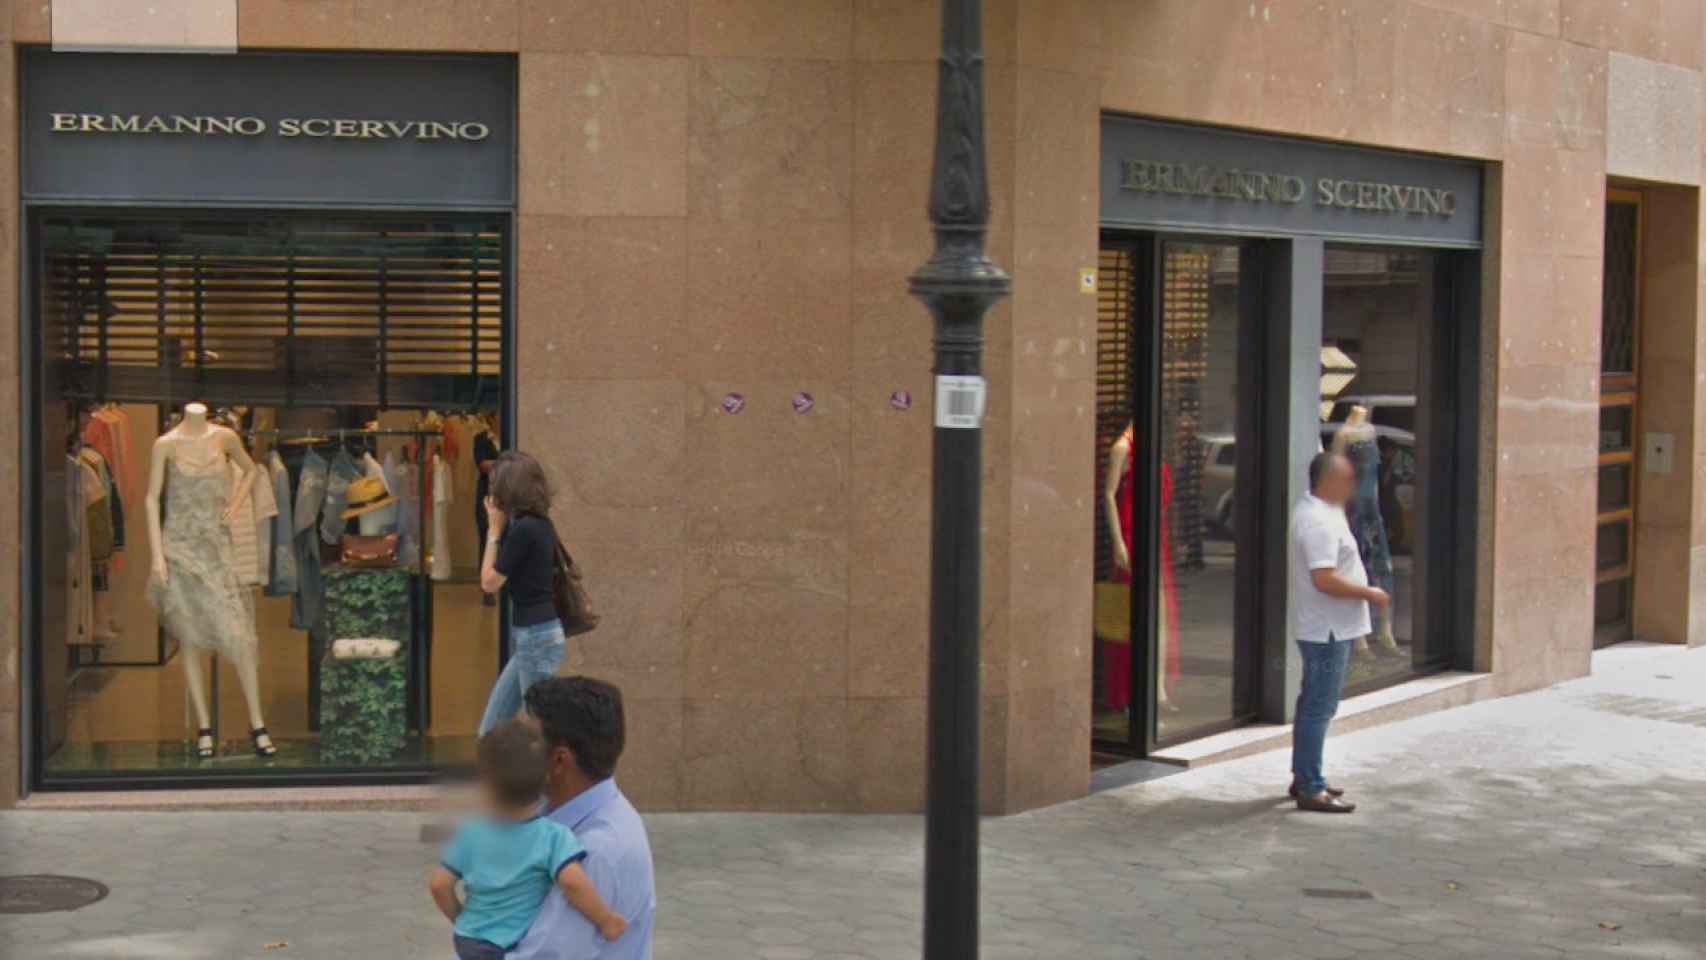 La tienda de Ermanno Scervino, en el paseo de Gràcia, cuando estaba abierta / GOOGLE MAPS